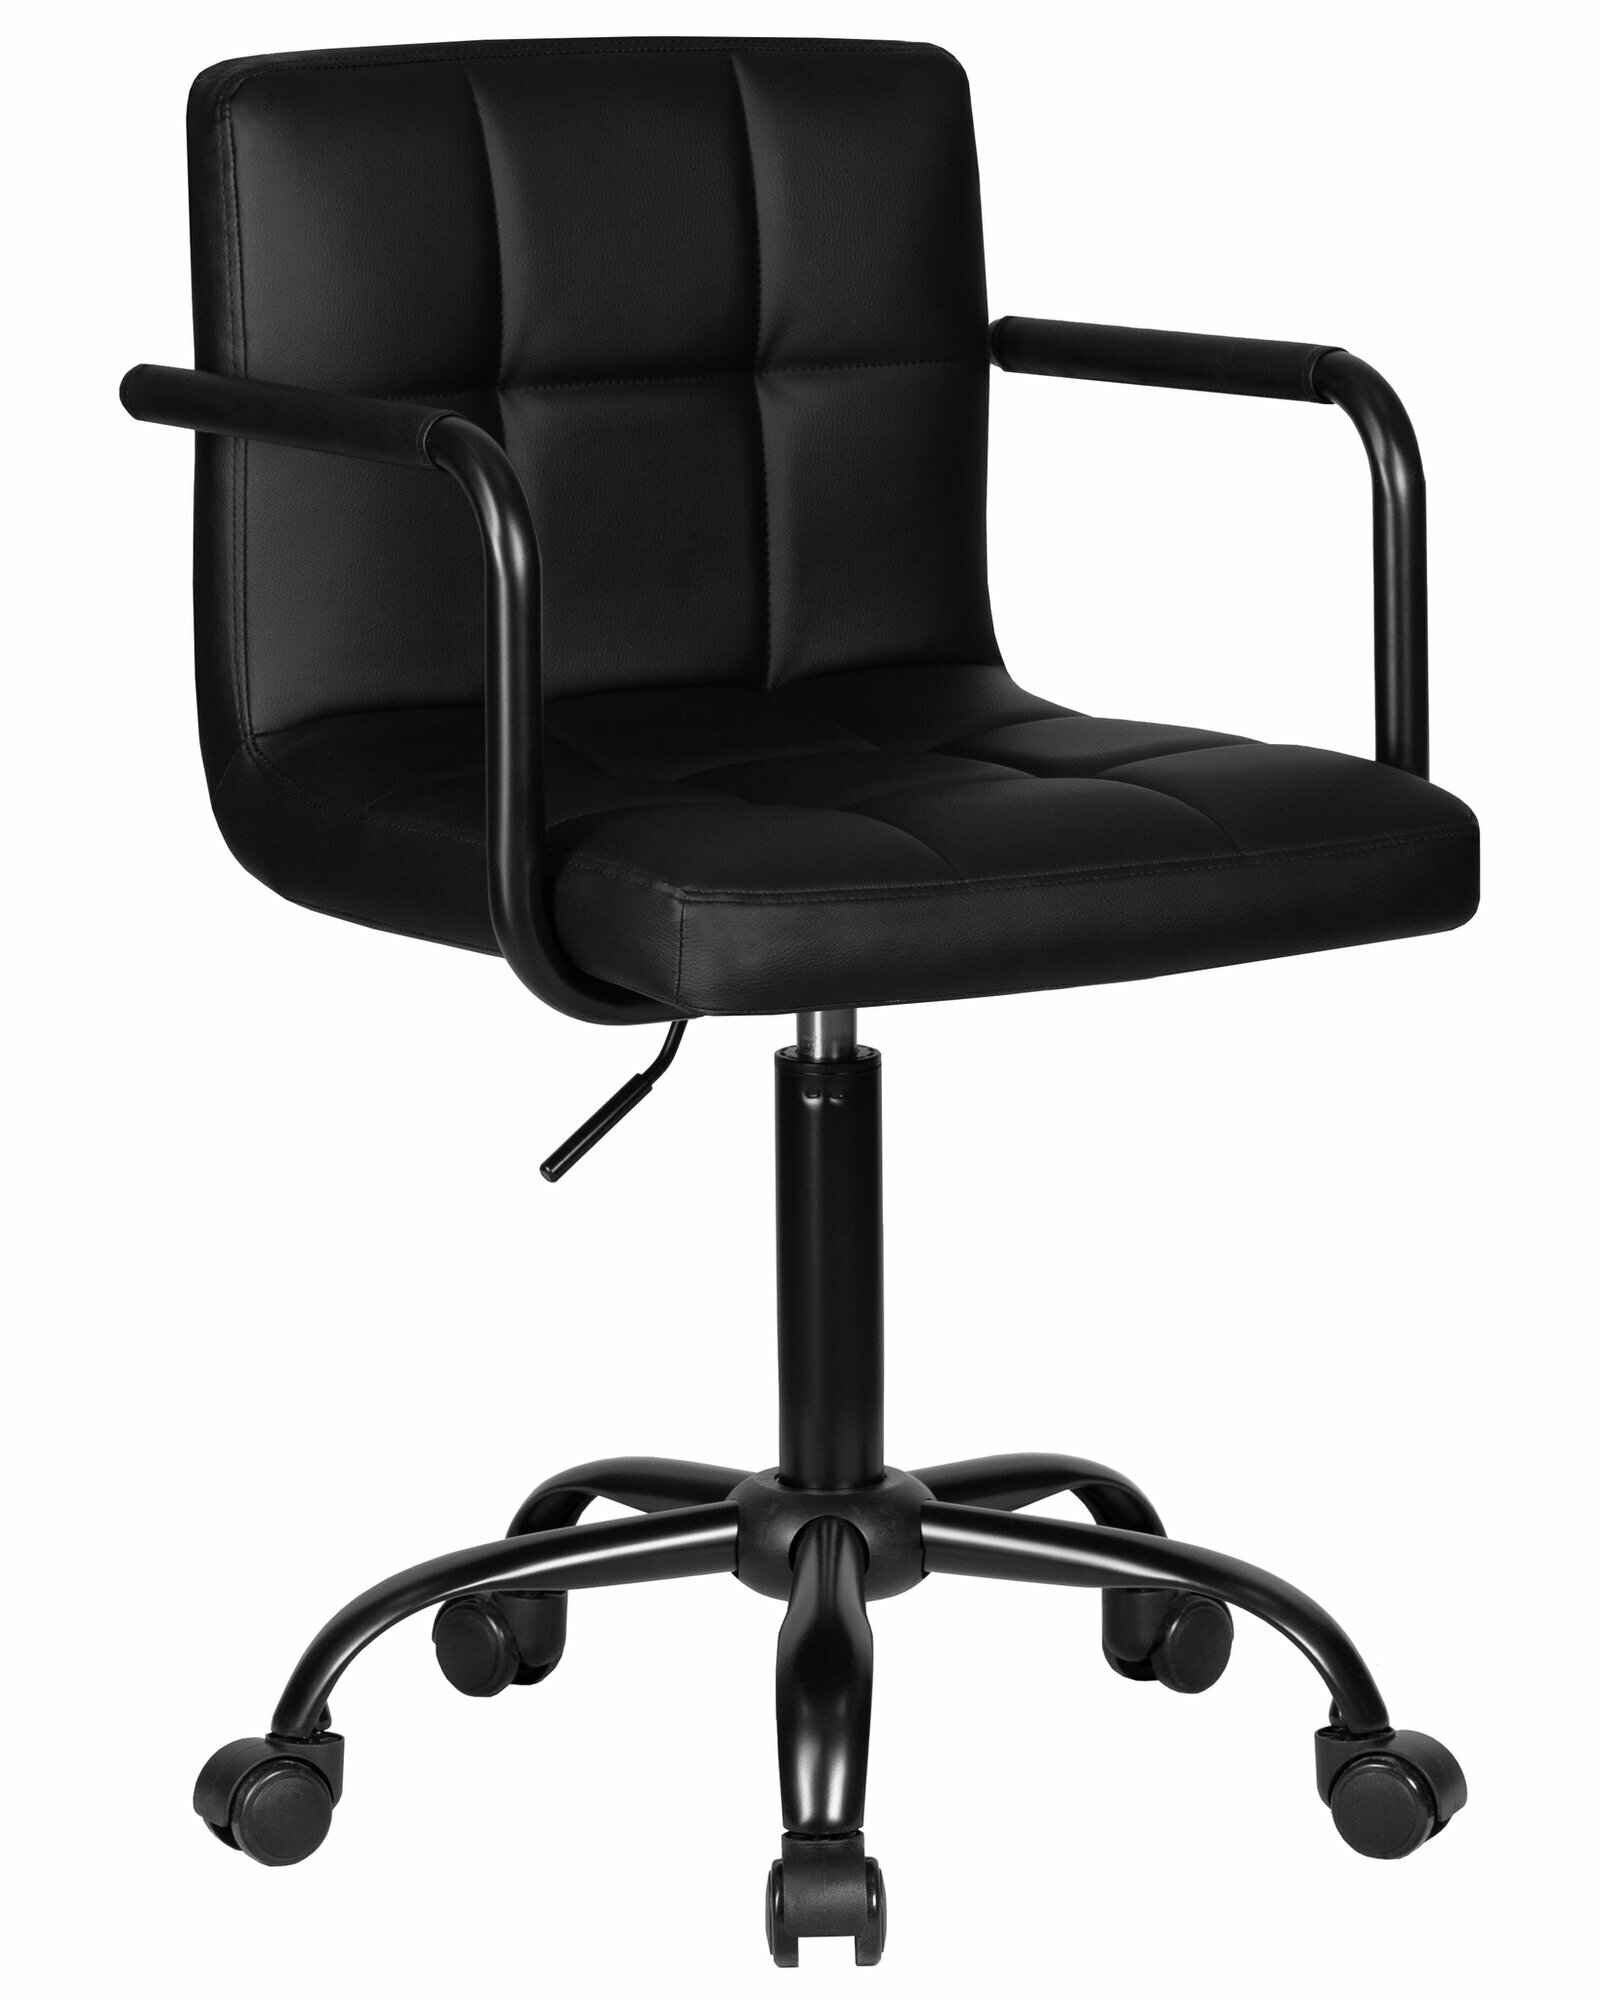 Офисное кресло для персонала DOBRIN TERRY BLACK LM-9400 цвет сиденья черный экокожа, цвет основания черный